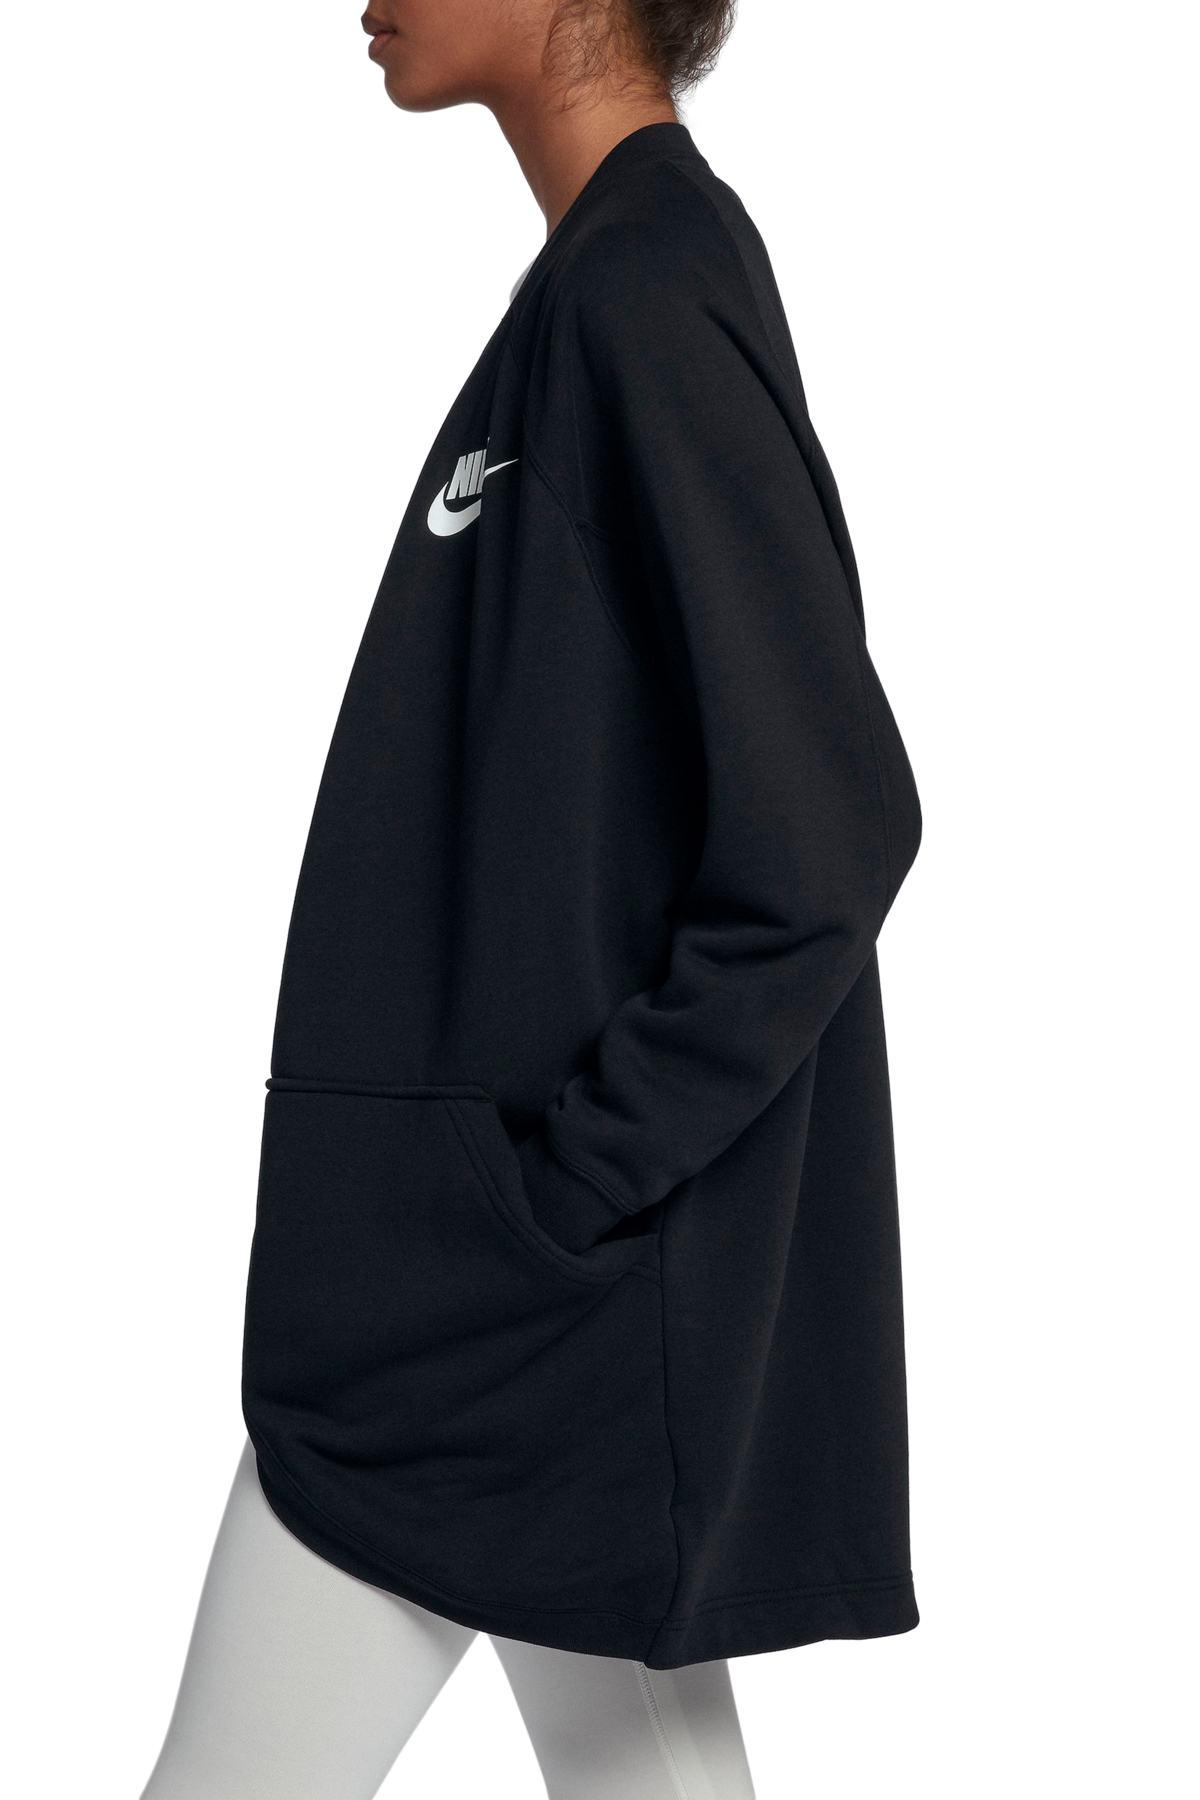 Nike Sportswear Rally Relaxed Fleece Cardigan in Black | Lyst